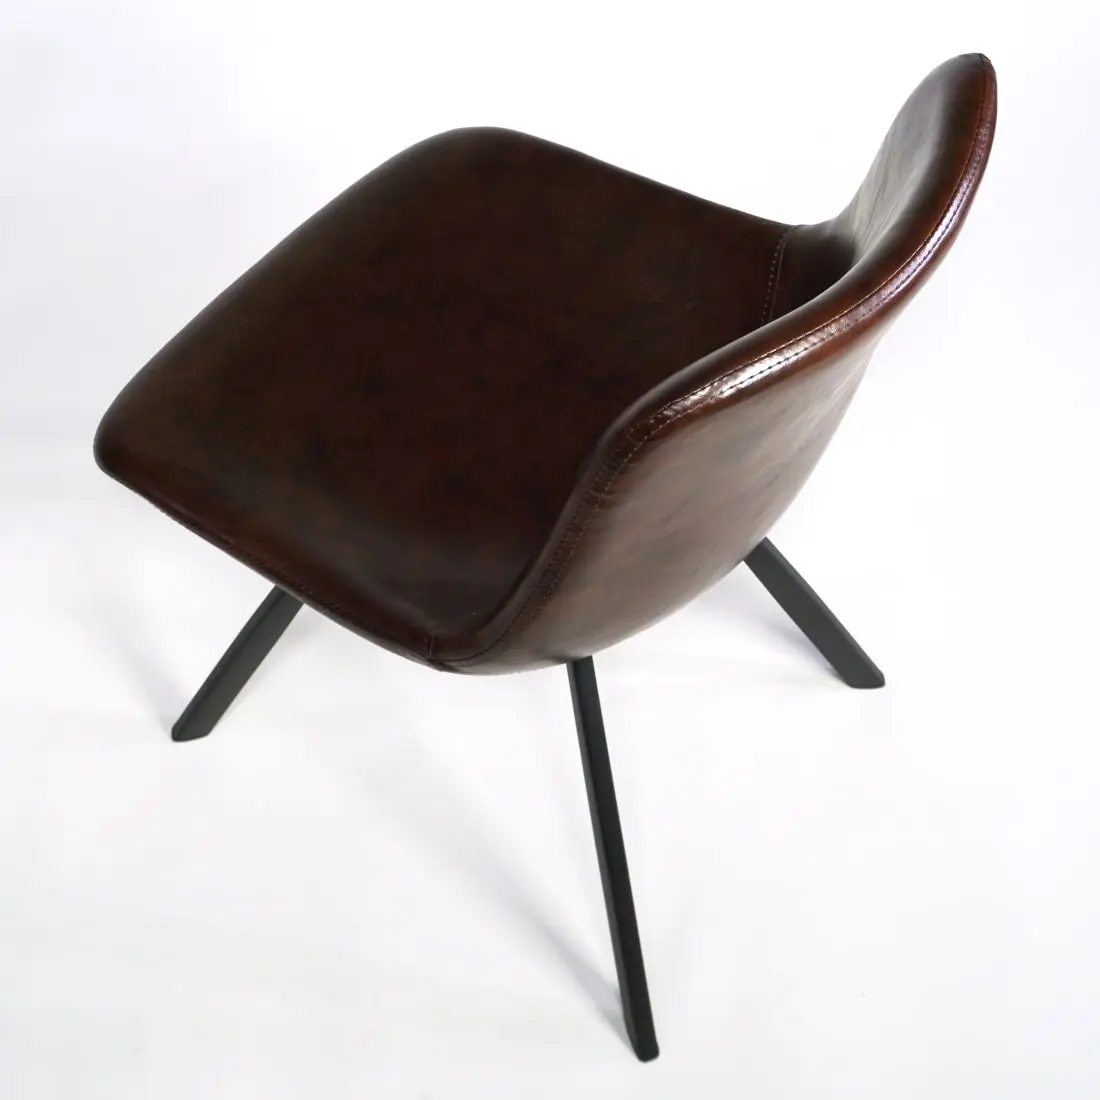 Brauner Stuhl für Esszimmer und Küche zuhause & Restaurant, Tagesbar, Cafe